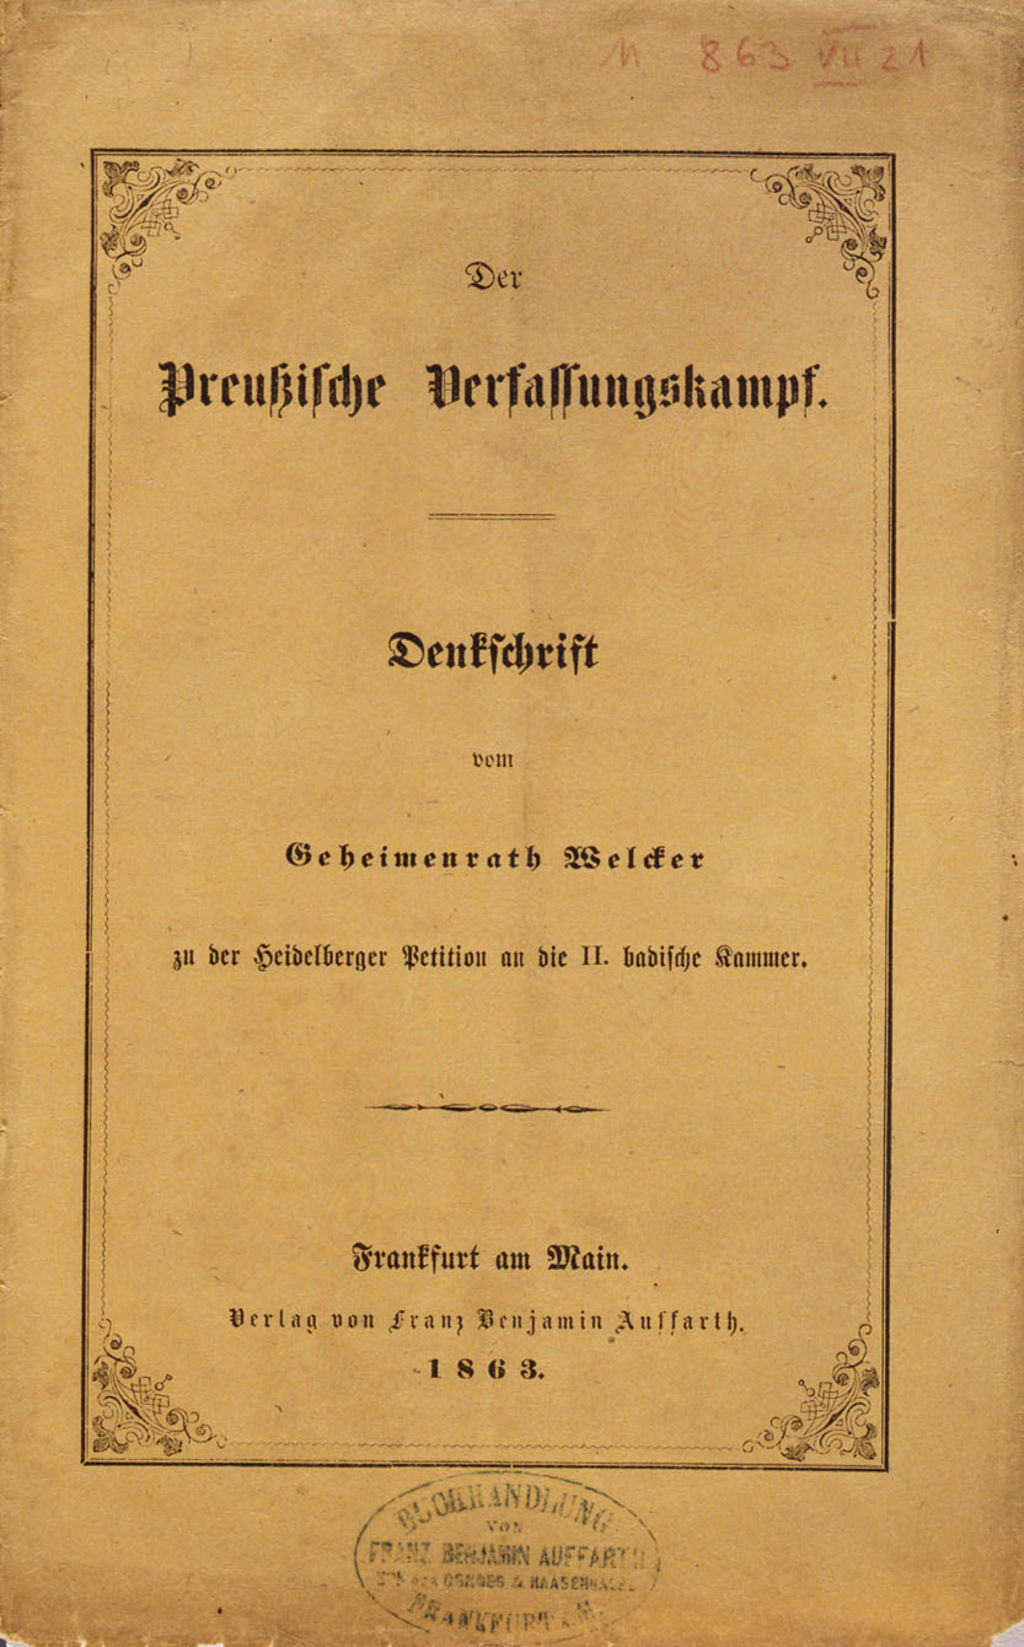 [Druckschrift: "Der Preußische Verfassungskampf", 1863]